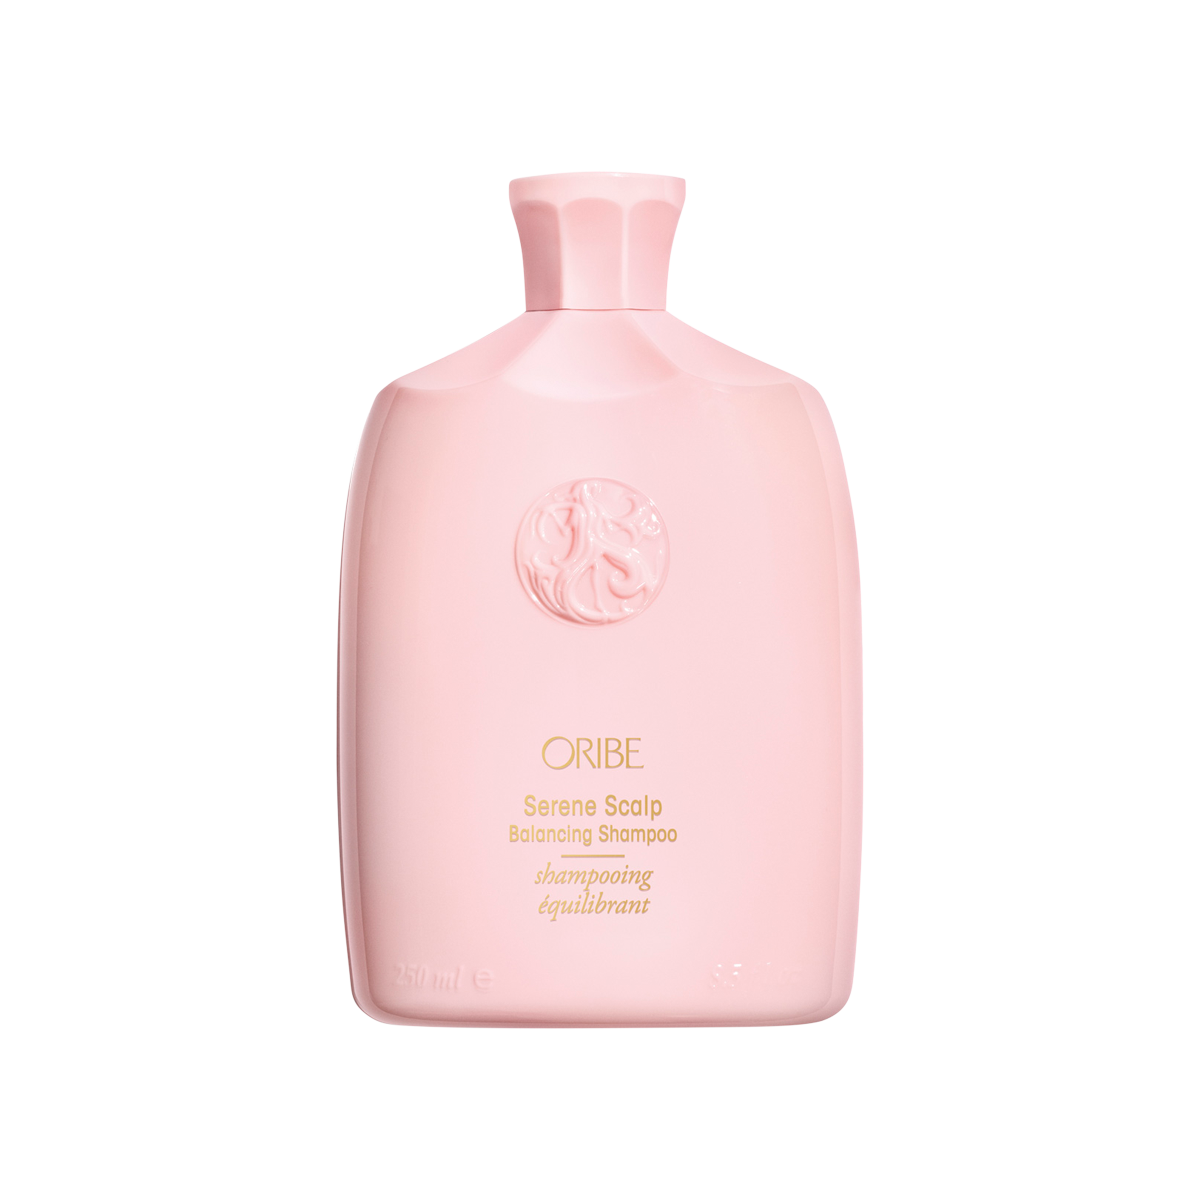 Oribe - Serene Scalp Balancing Shampoo